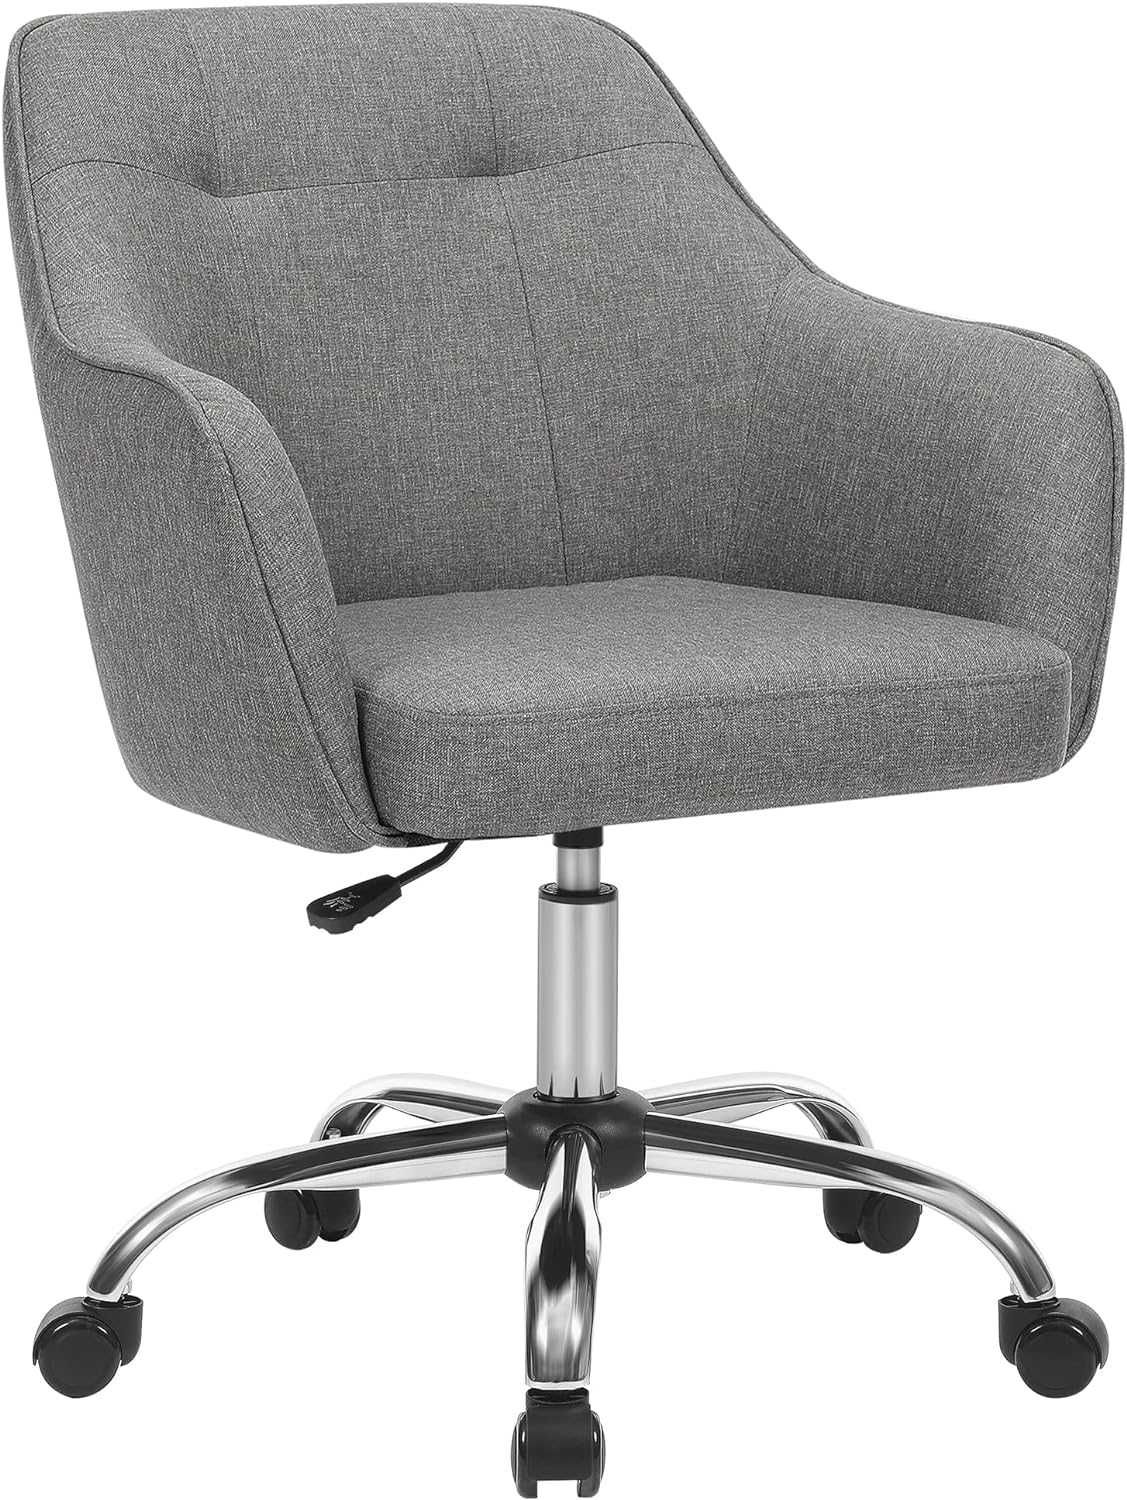 Nowe krzesło obrotowe / fotel biurowy / Homeoffice / SONGMICS !7522!